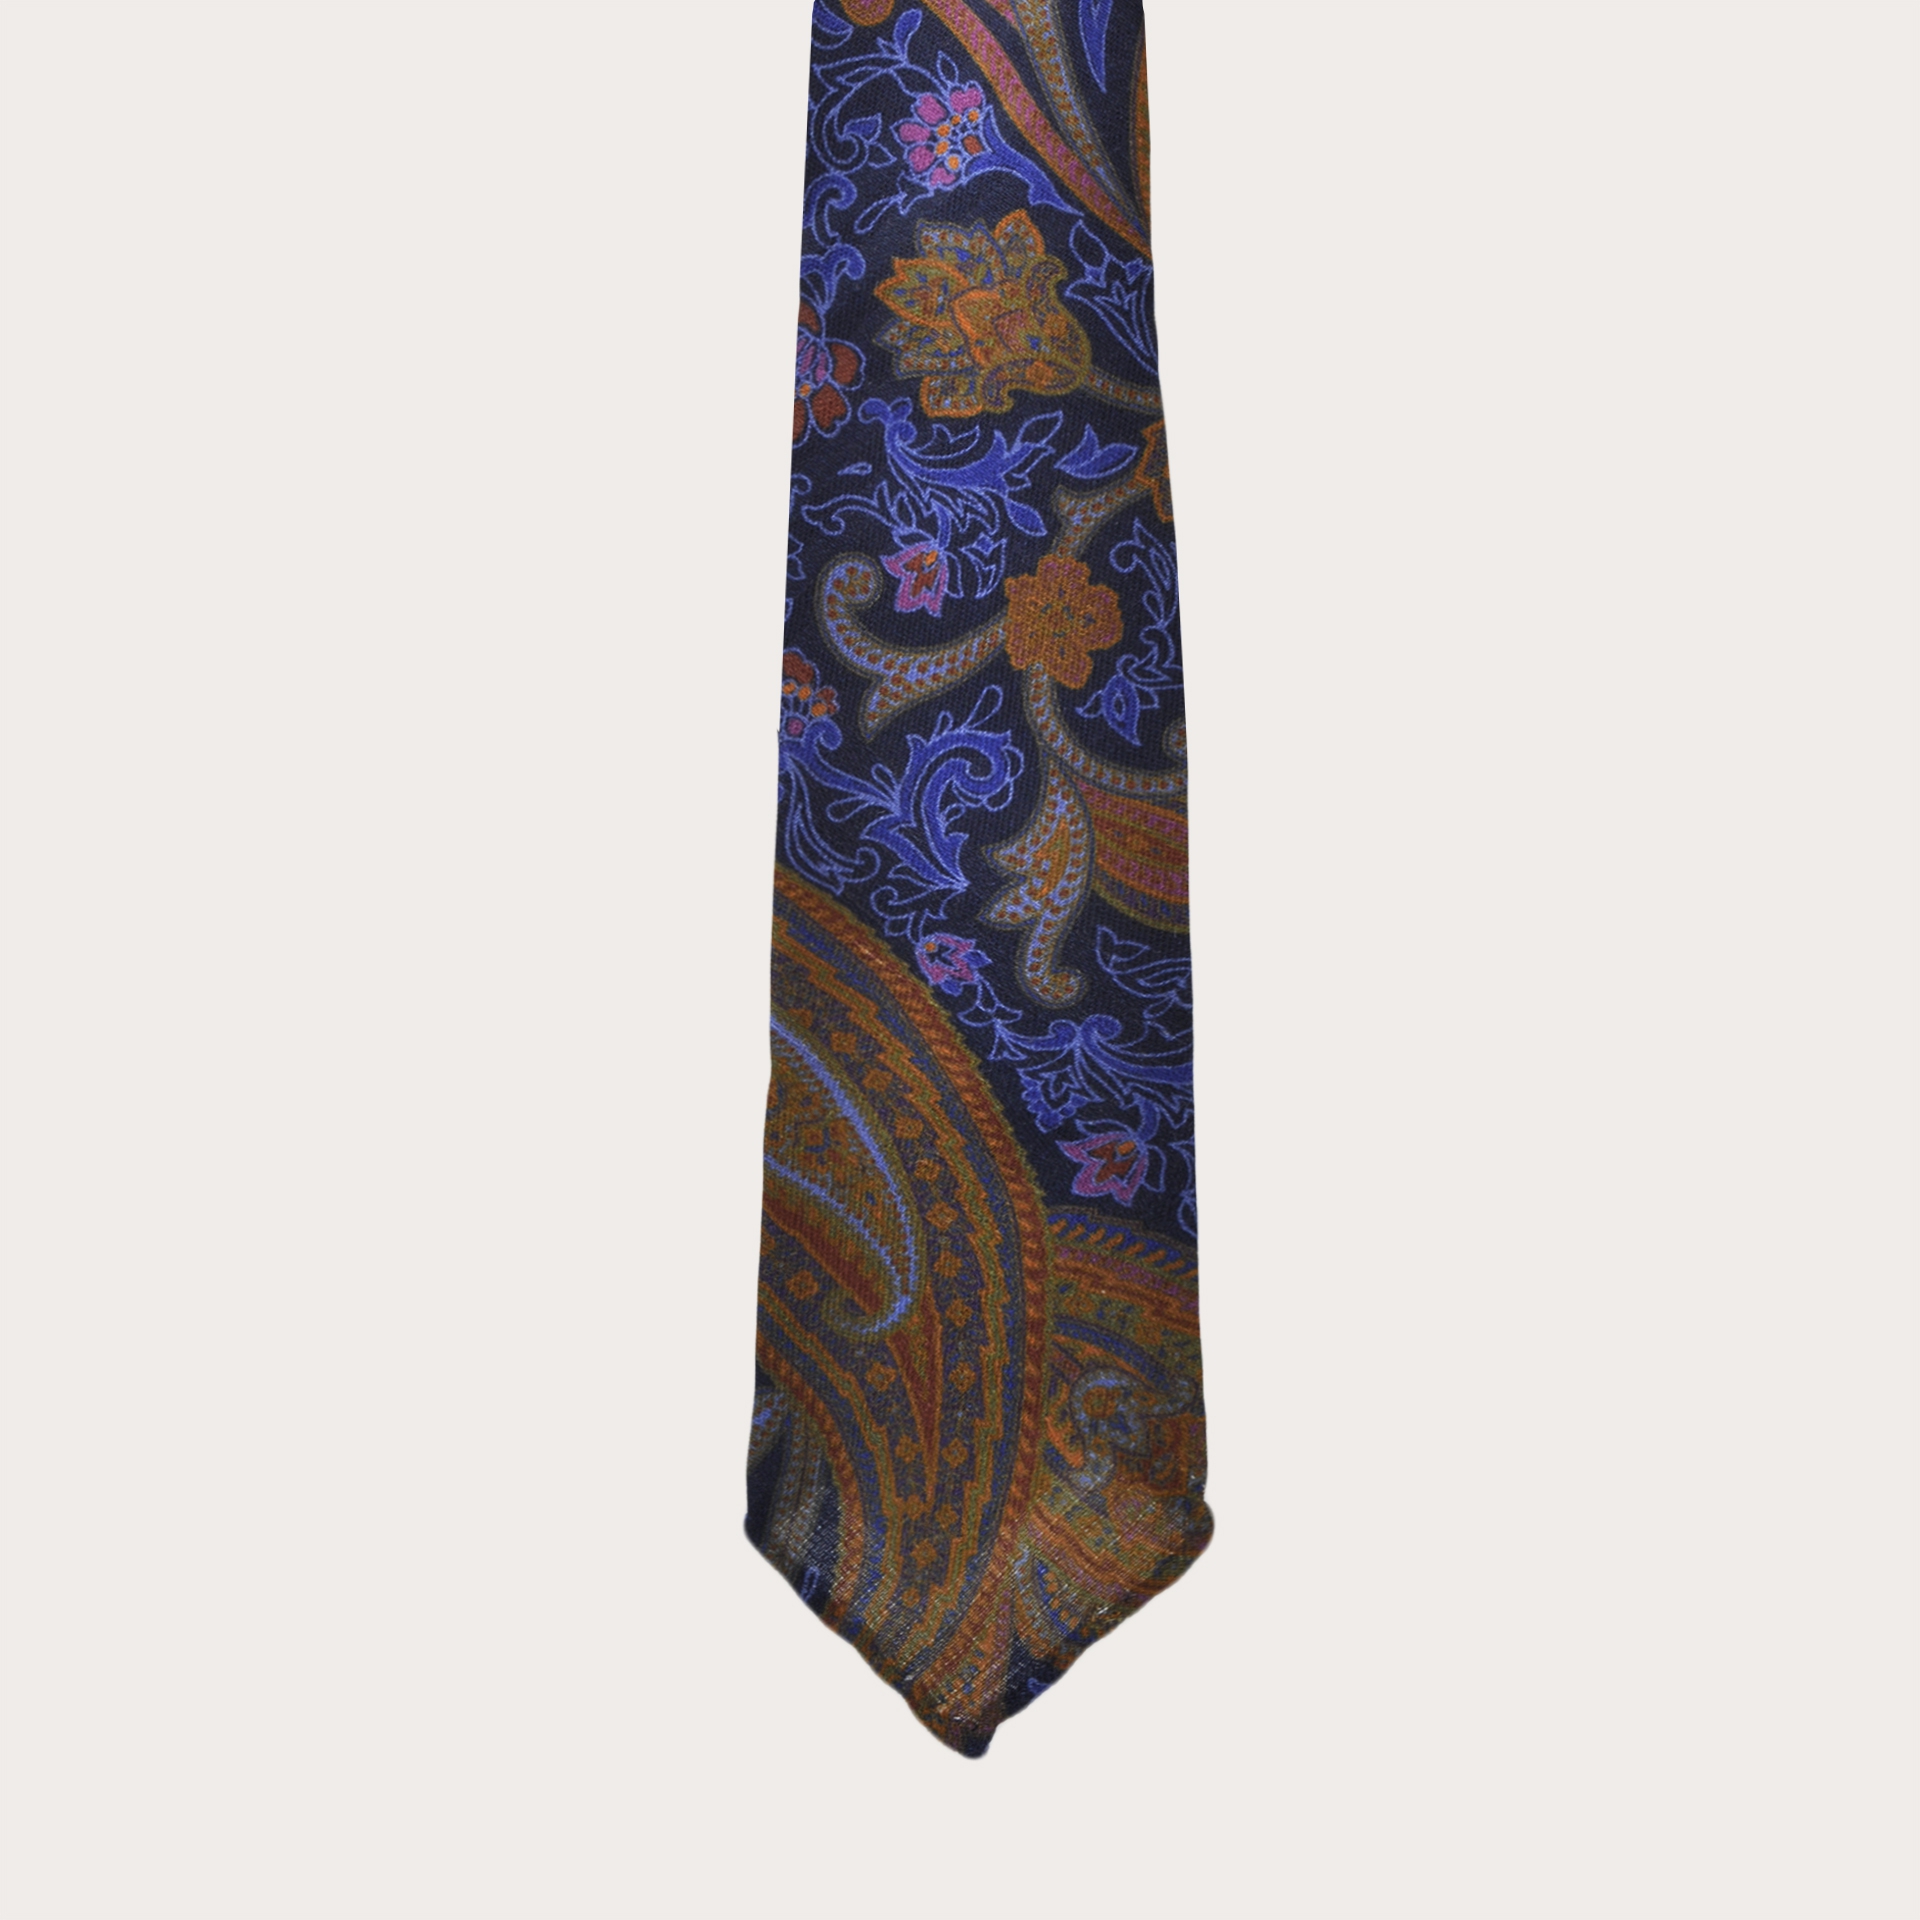 Corbata de lana, estampado paisley naranja y azul